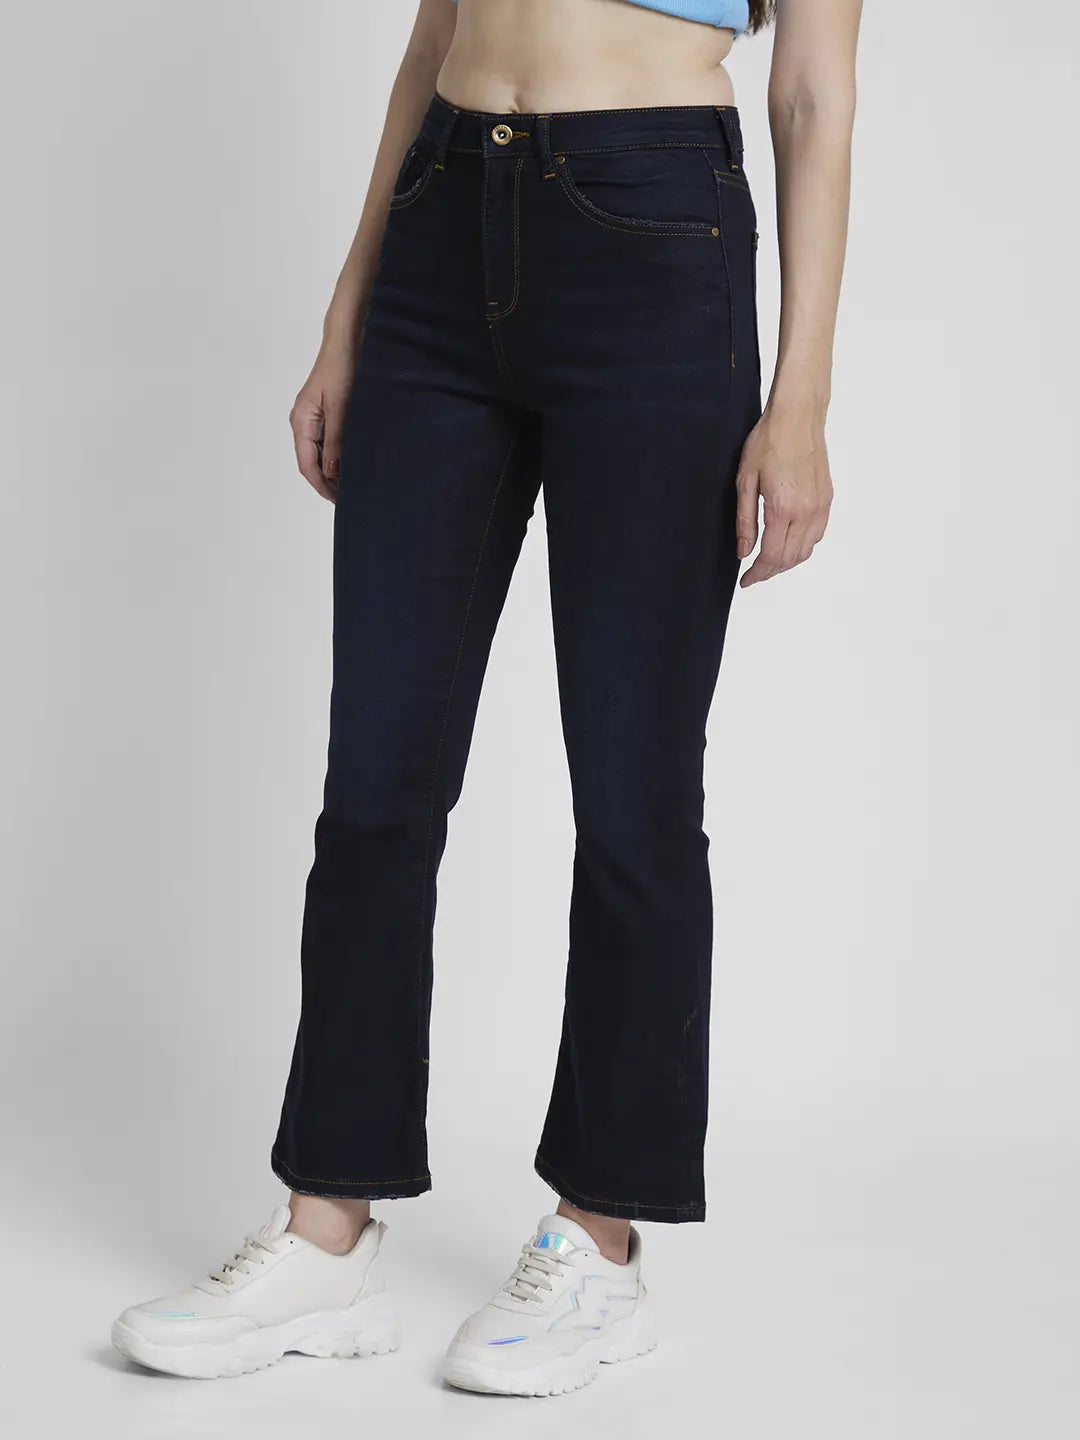 Spykar Women Dark Blue Lycra Bootcut Fit Ankle Length Clean Look Jeans -(Elissa)